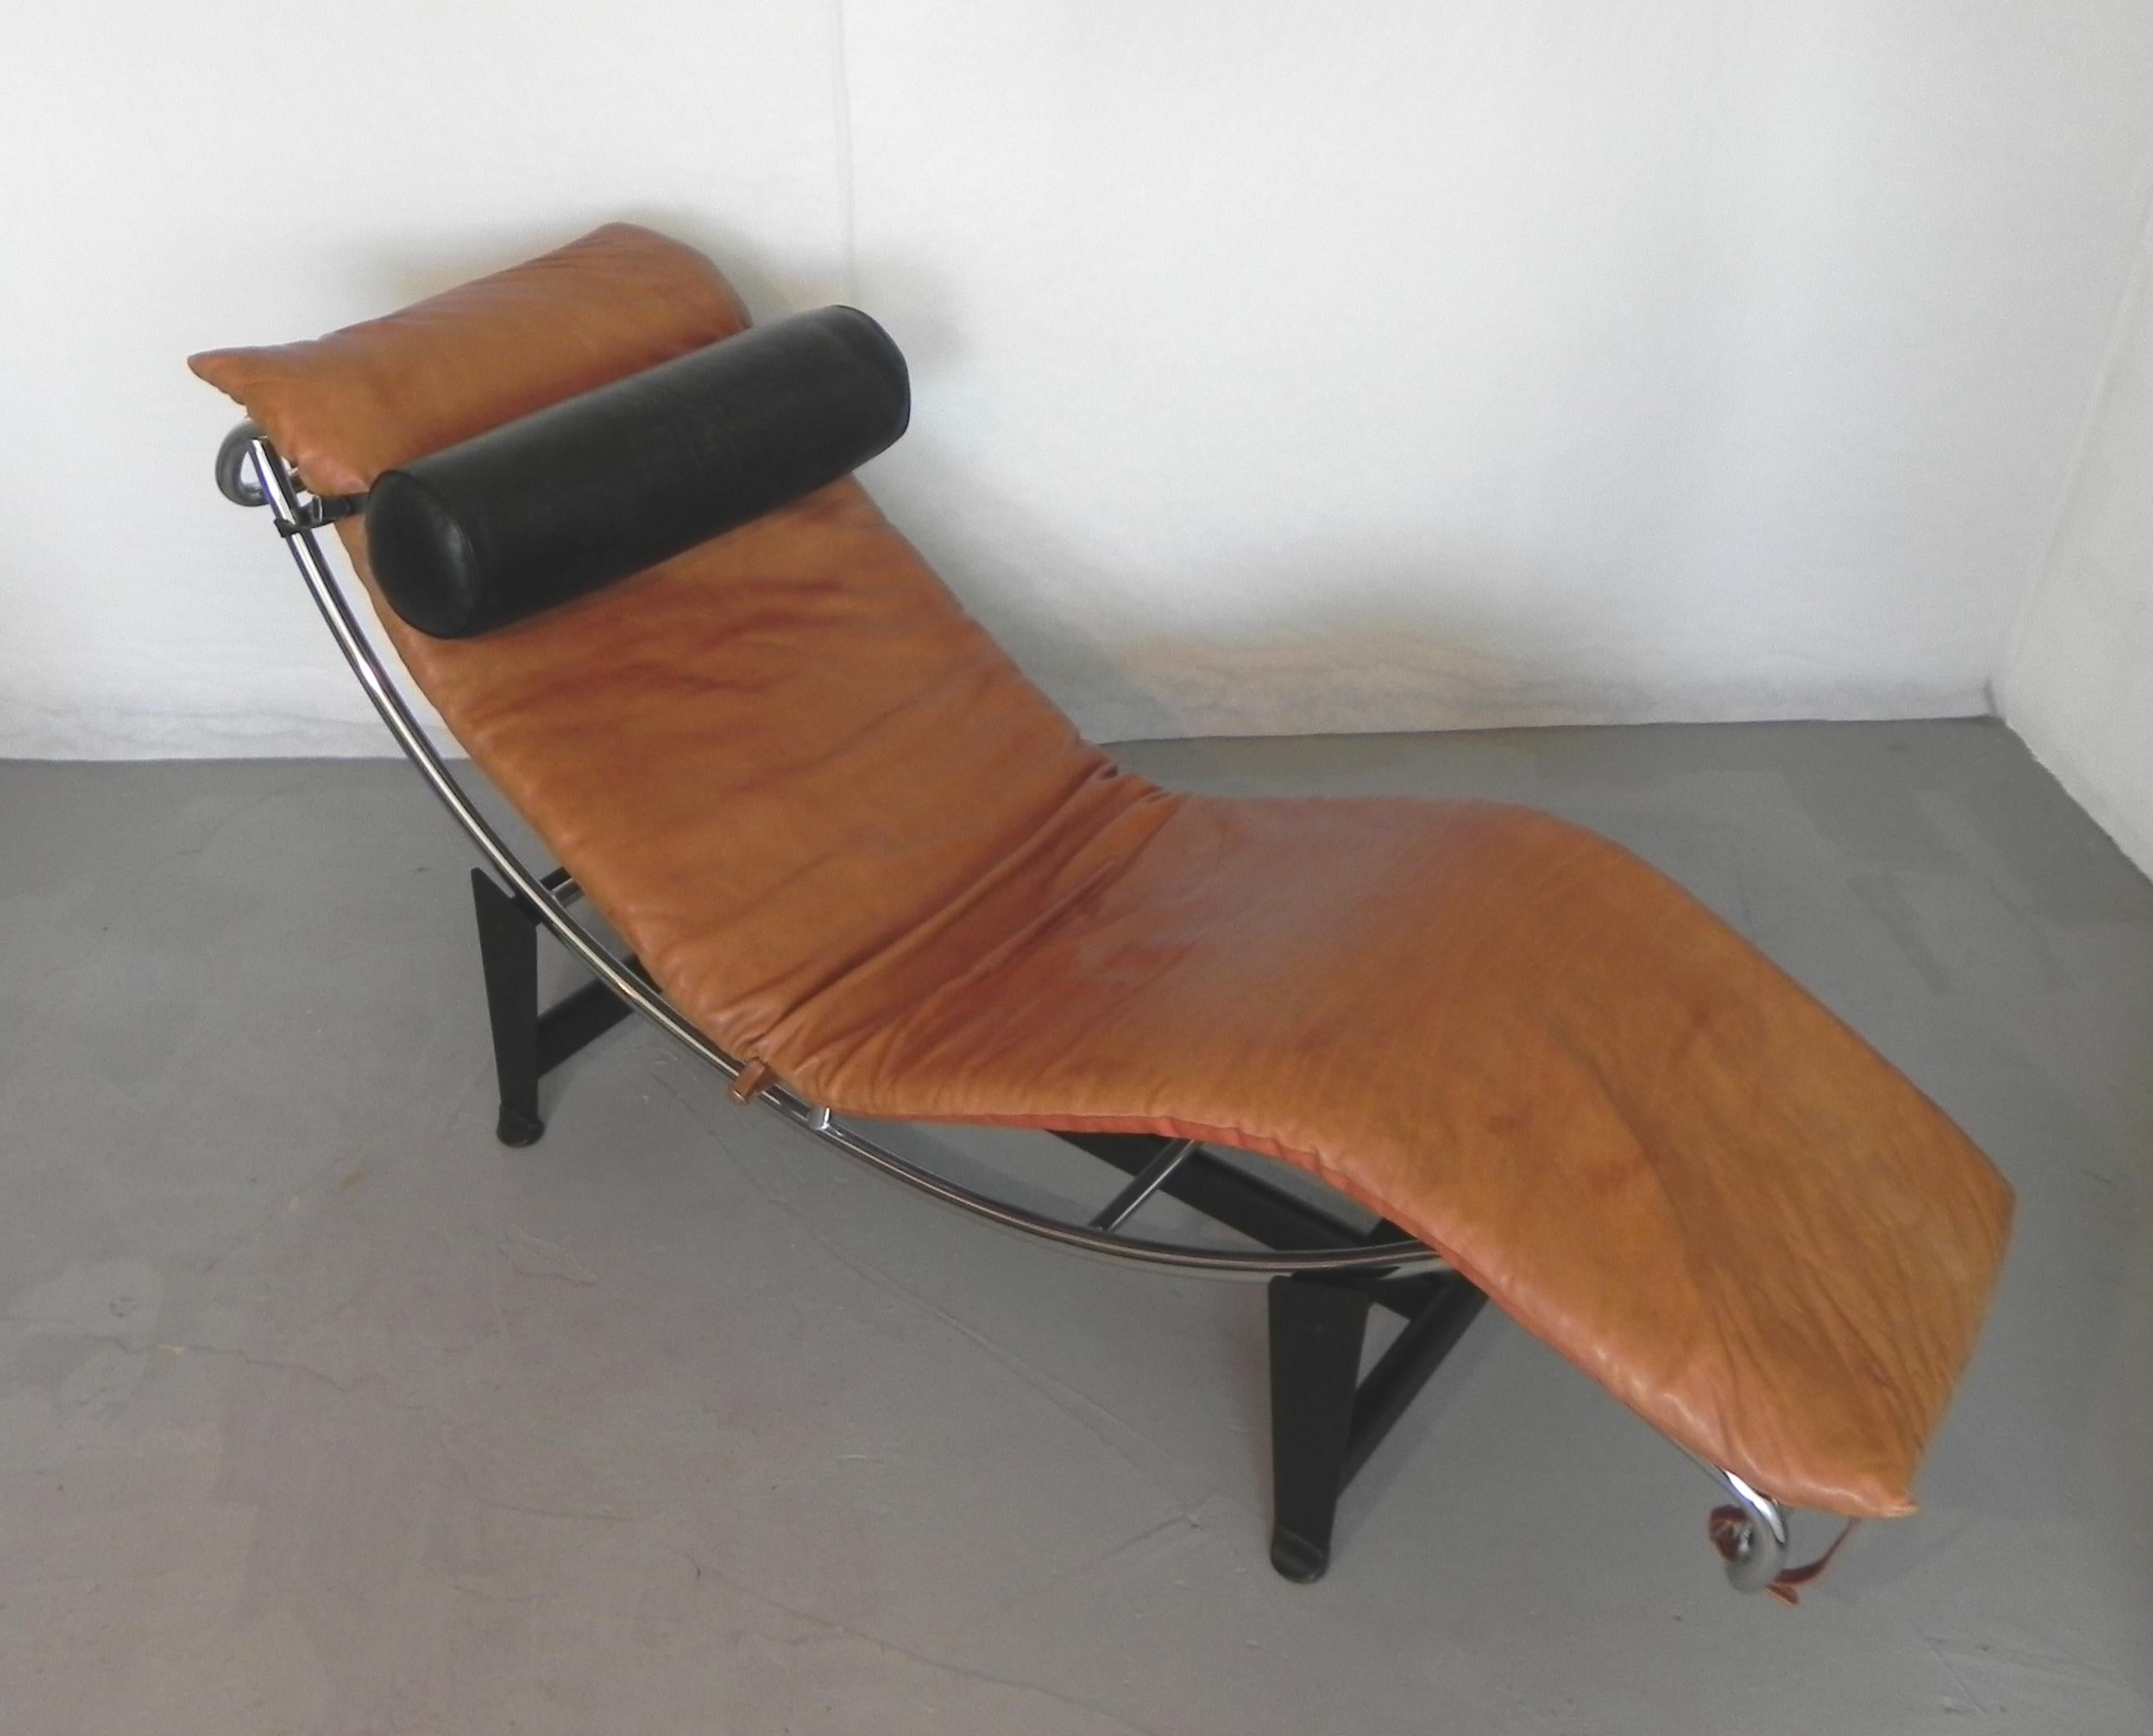 chaise longue di ispirazione Bauhaus, anni 80 For Sale 2